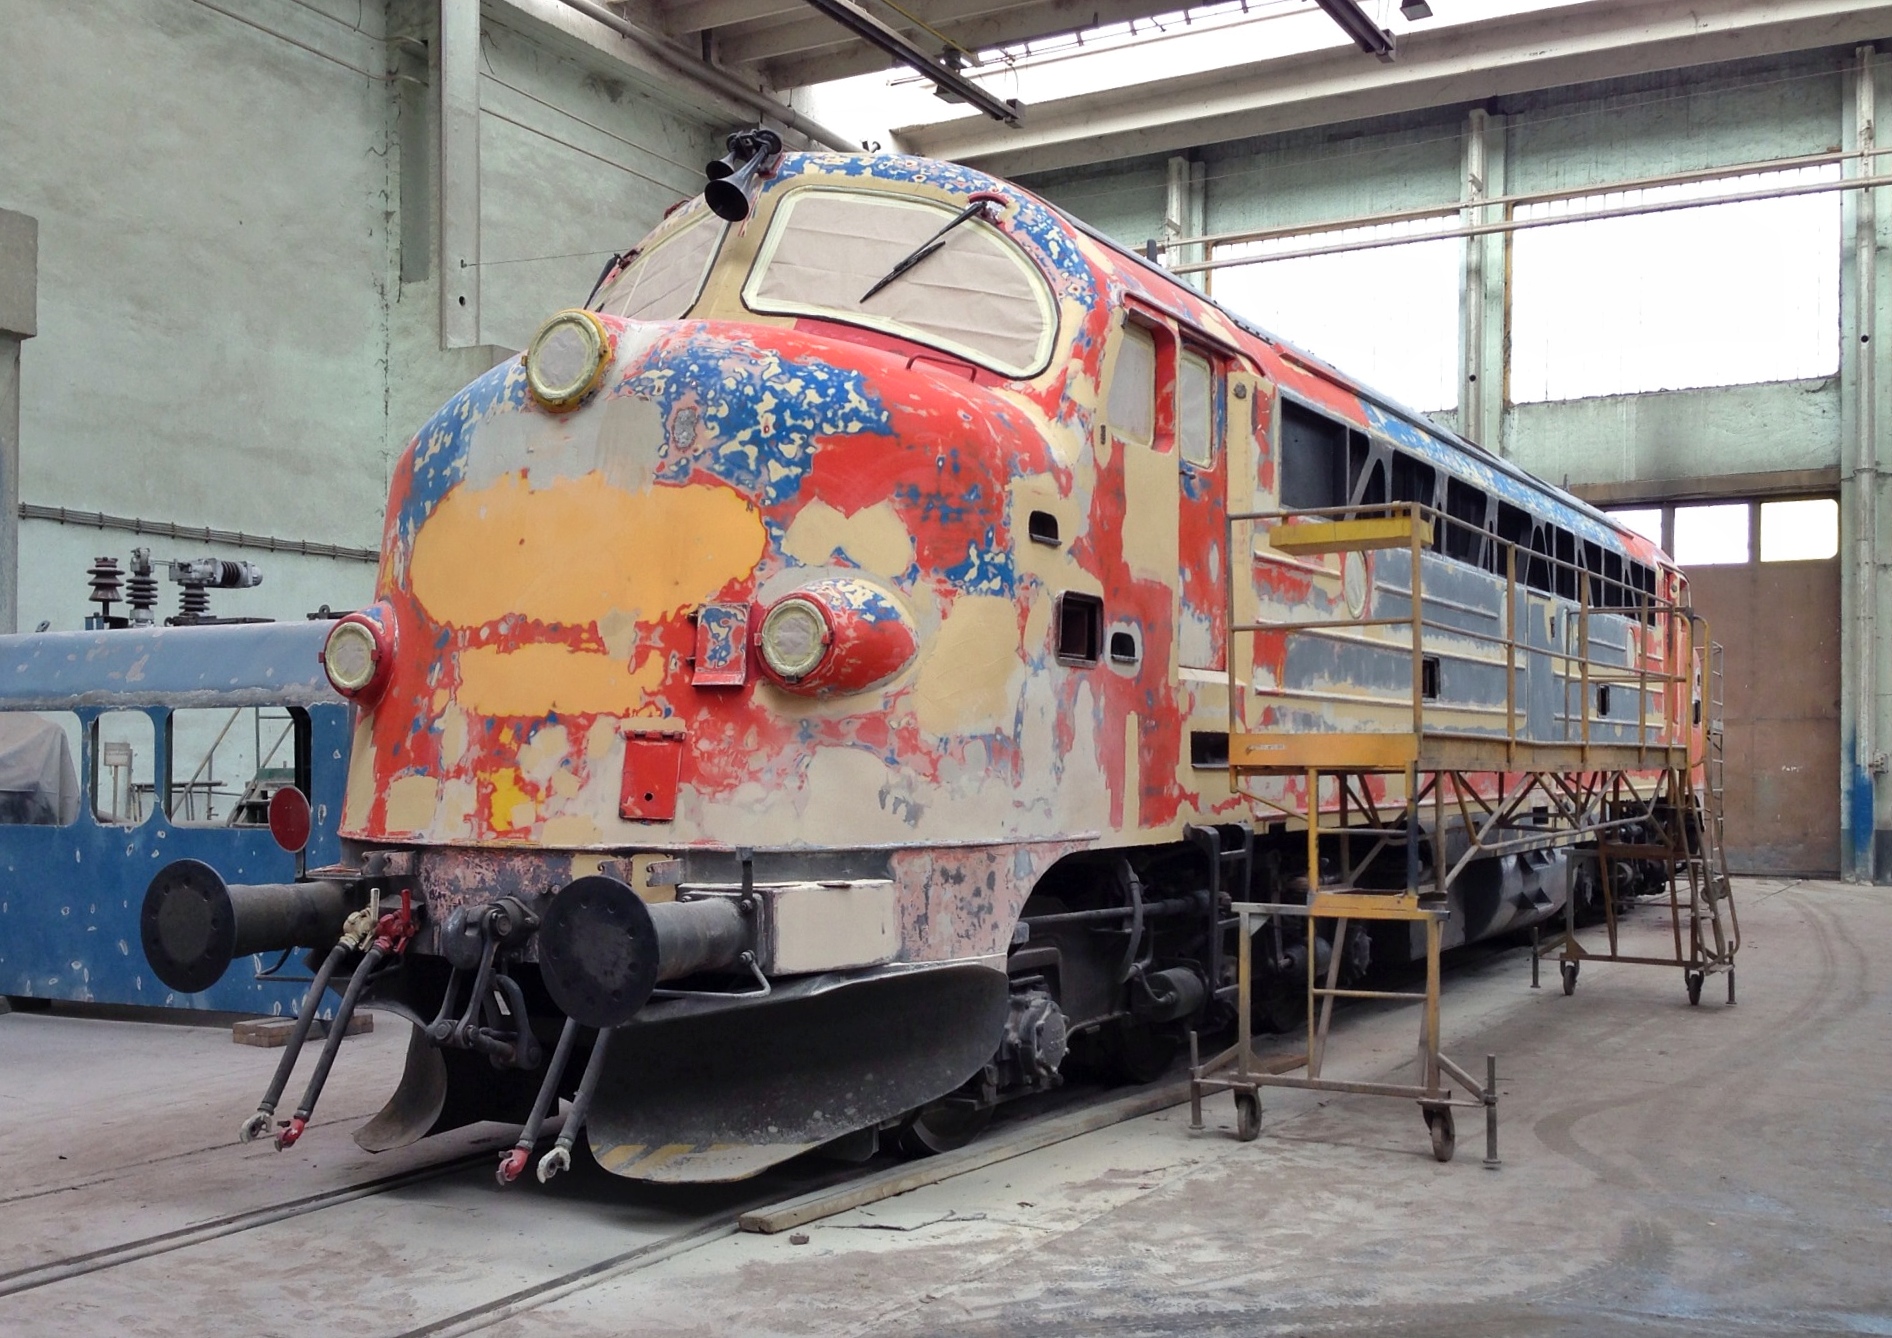 Itt tart a gép: a régi festést levakarják, a gépet glettelik<br>(fotók: Farkas Csaba)